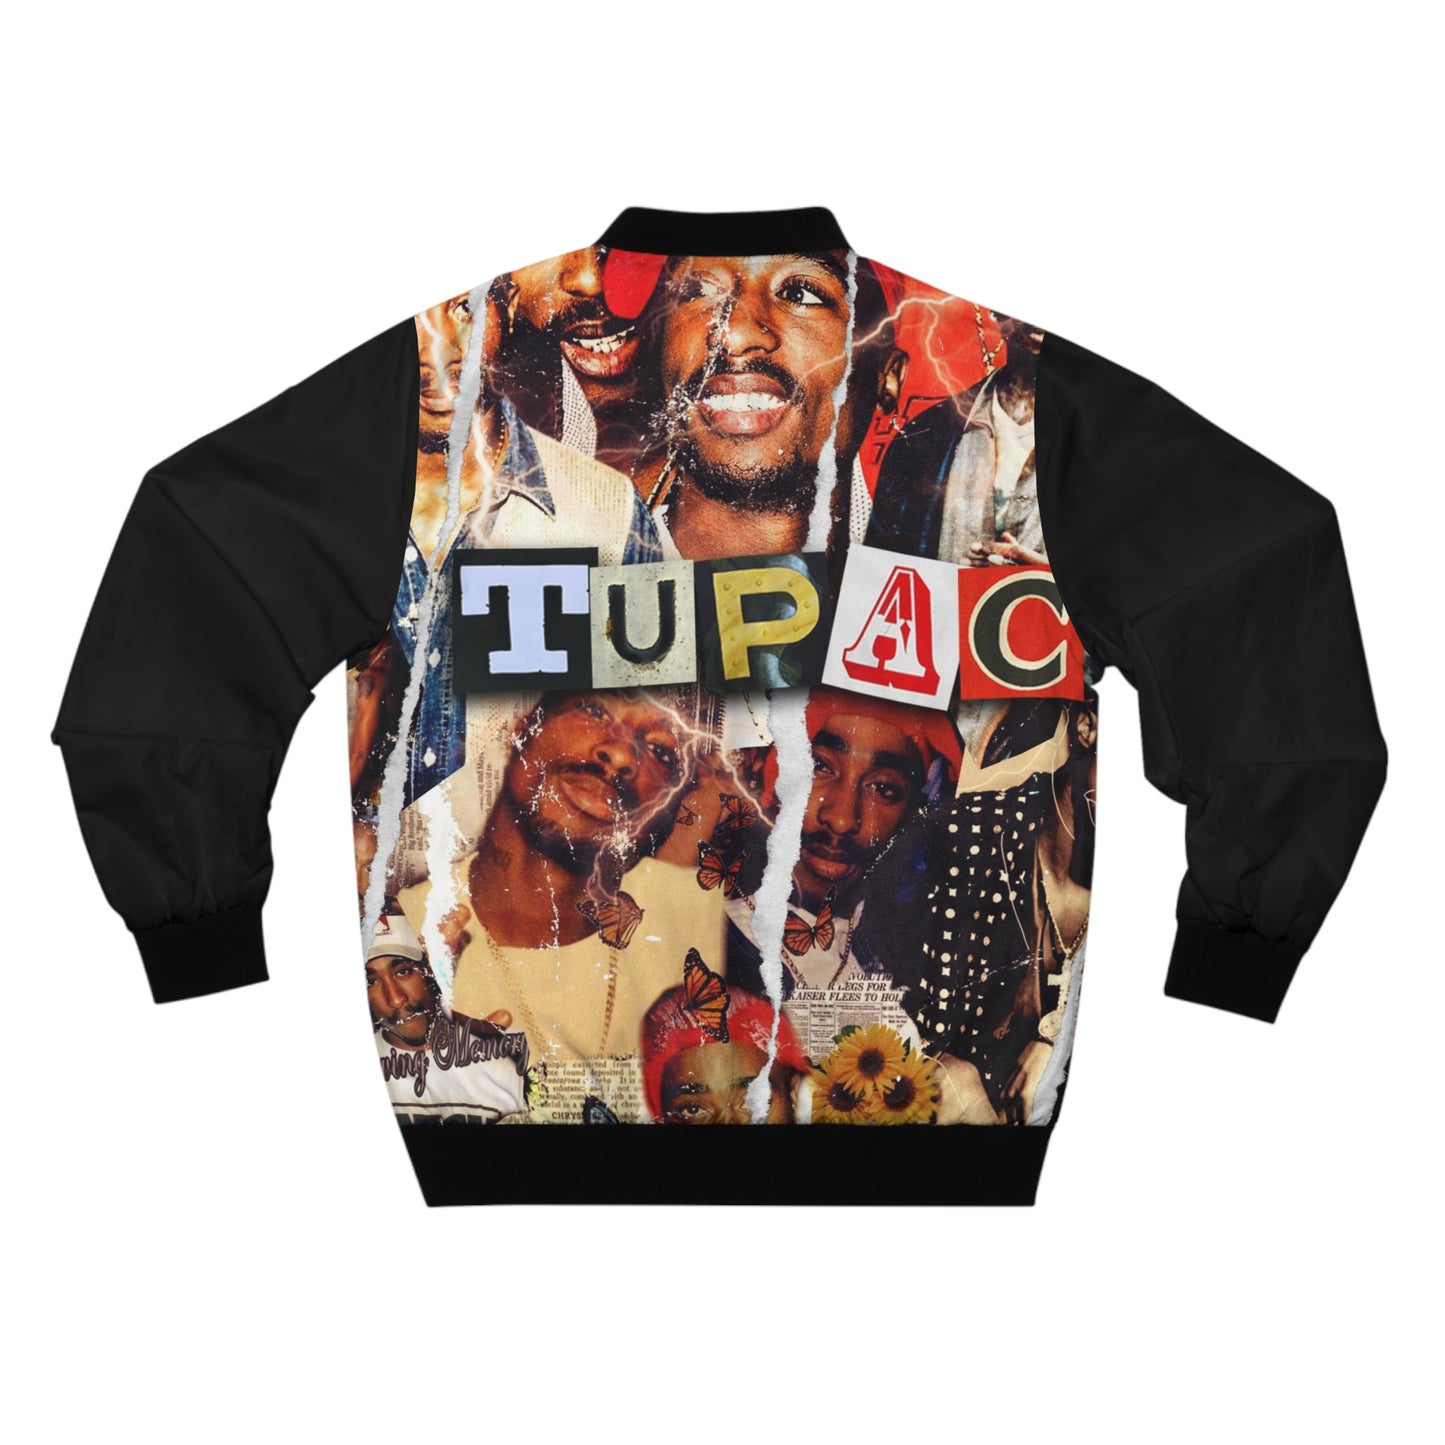 Tupac collage Bomber Jacket black